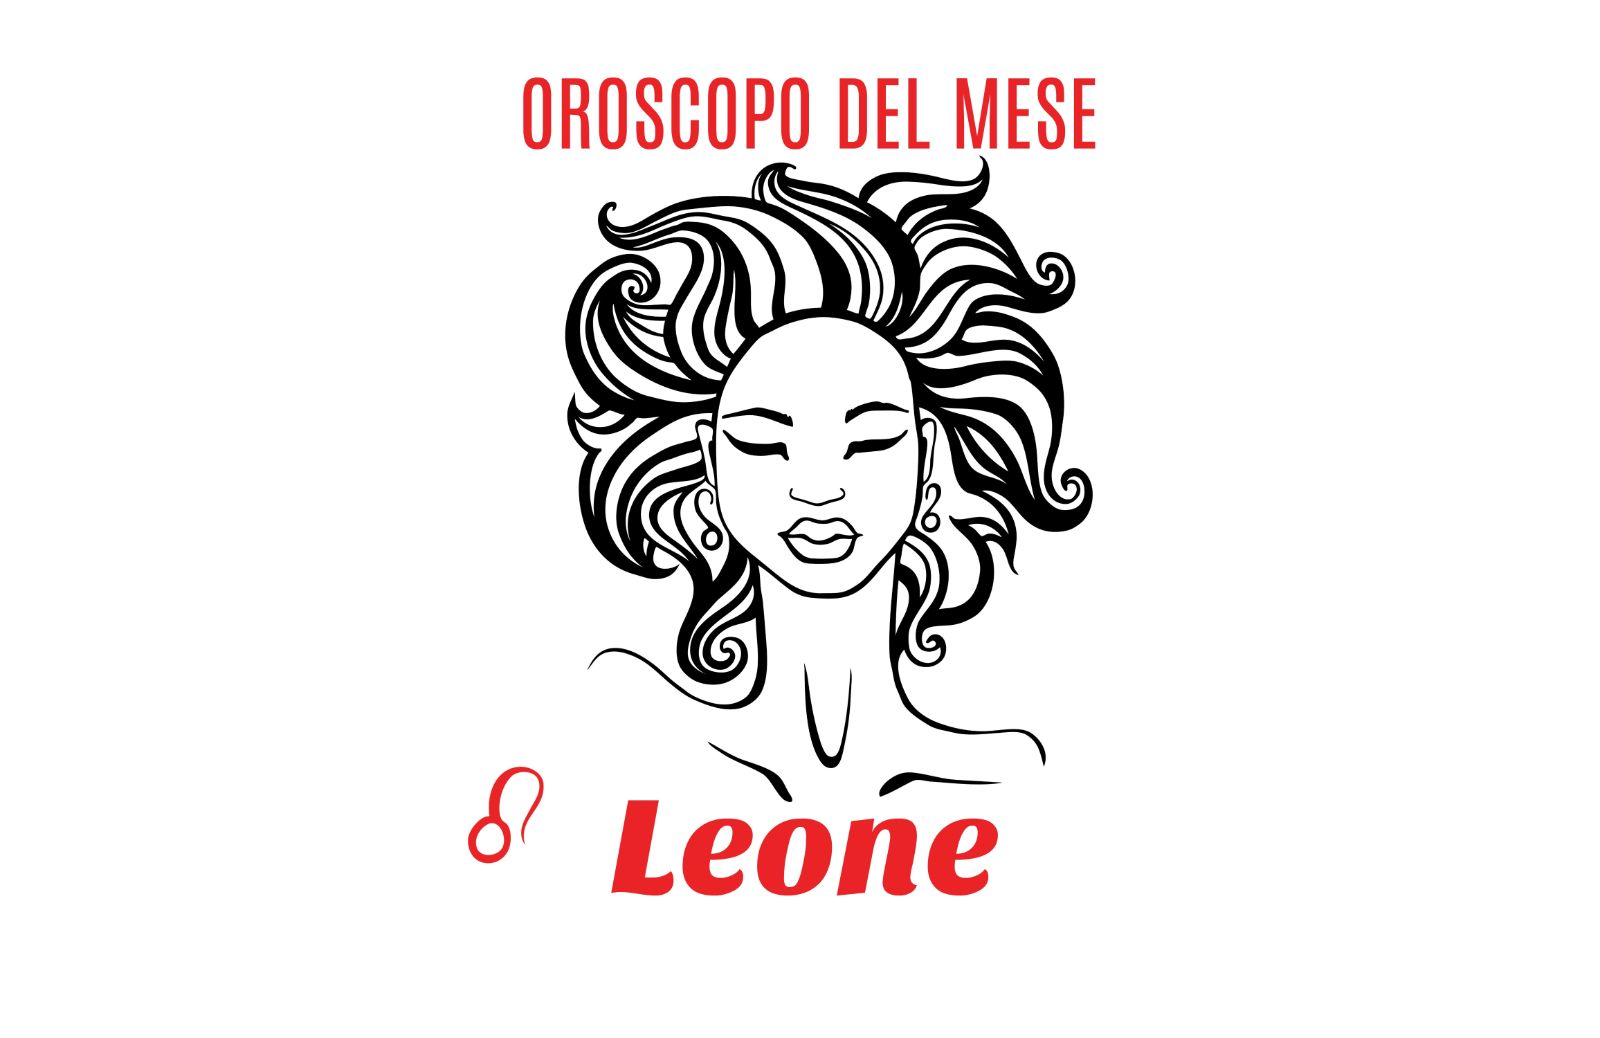 Oroscopo del mese: Leone - ottobre 2019